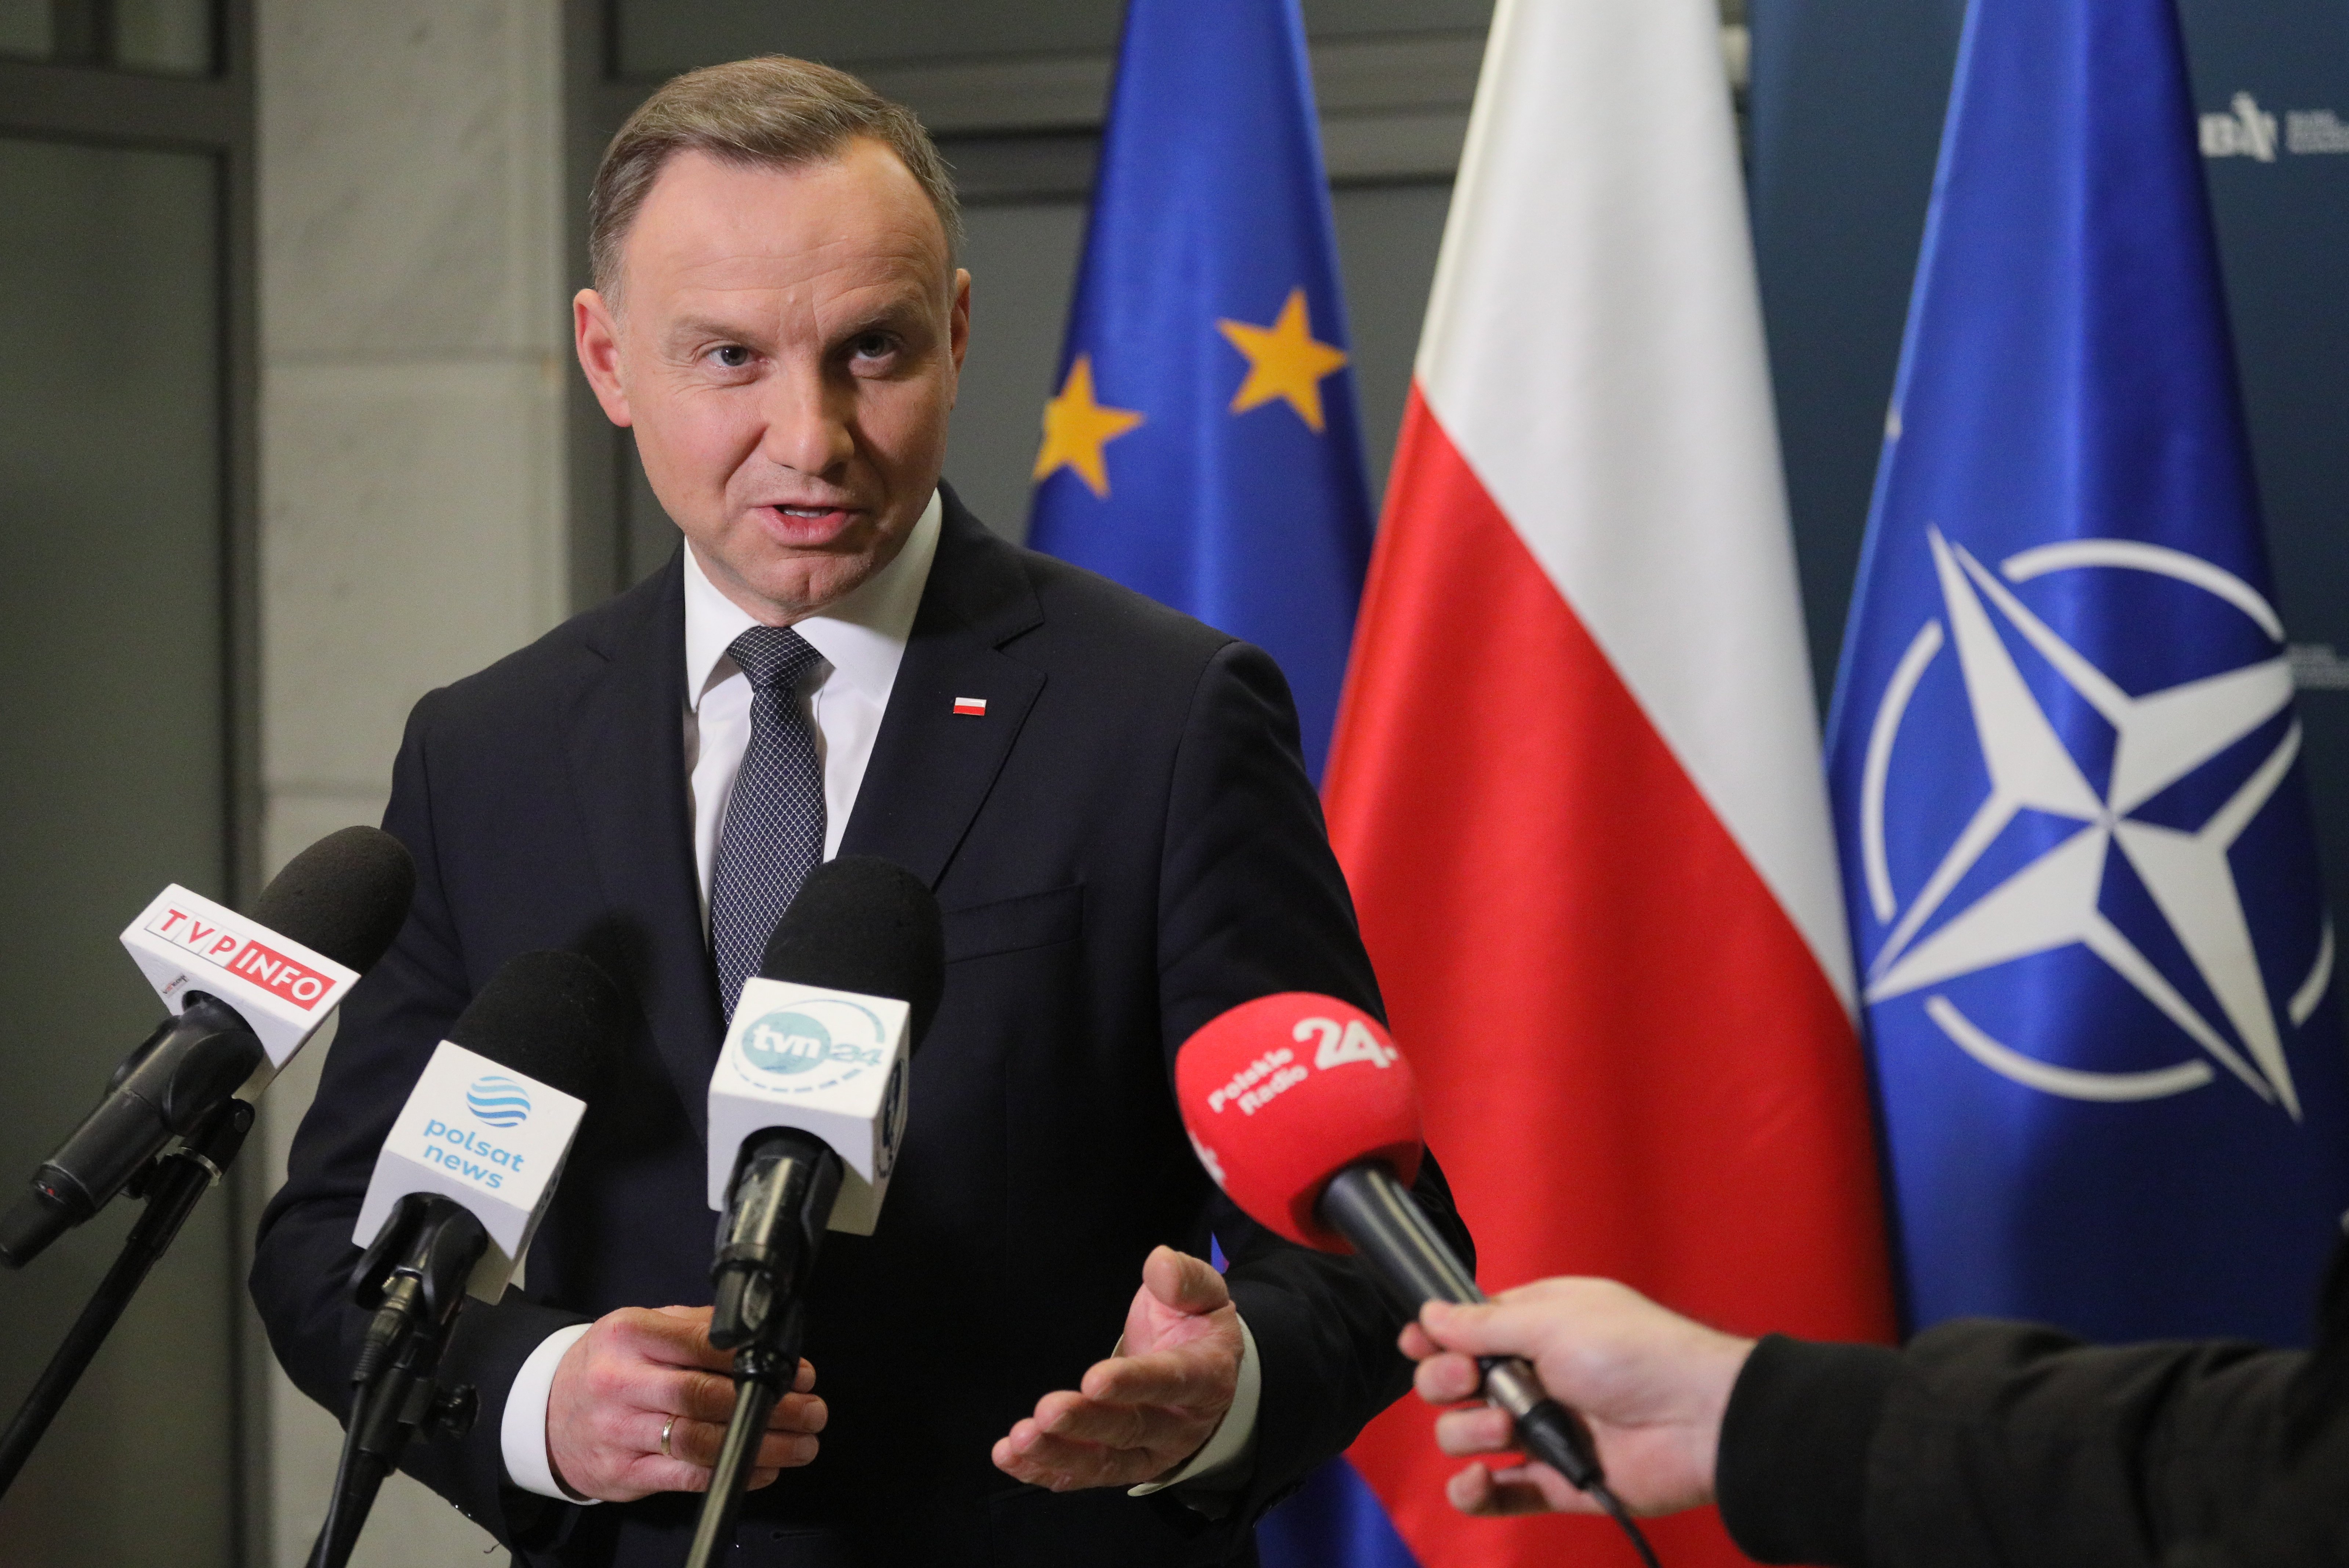 El president de Polònia apunta que els míssils són "probablement un incident desafortunat"